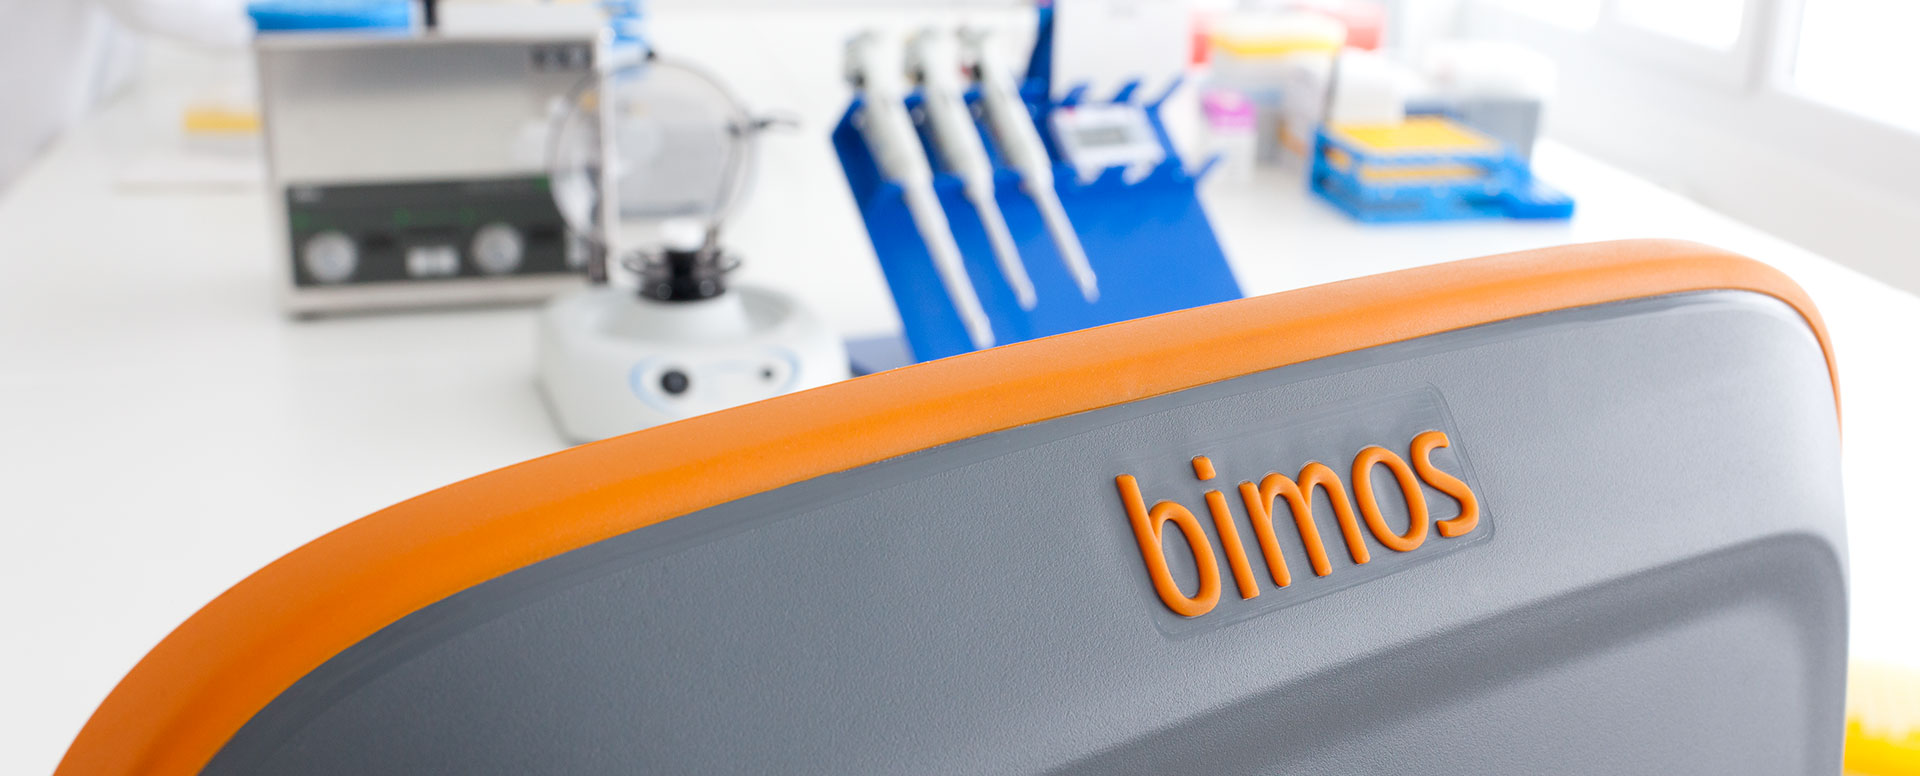 Bimos Magazin - Design steigert die Arbeitsplatzqualität im Labor